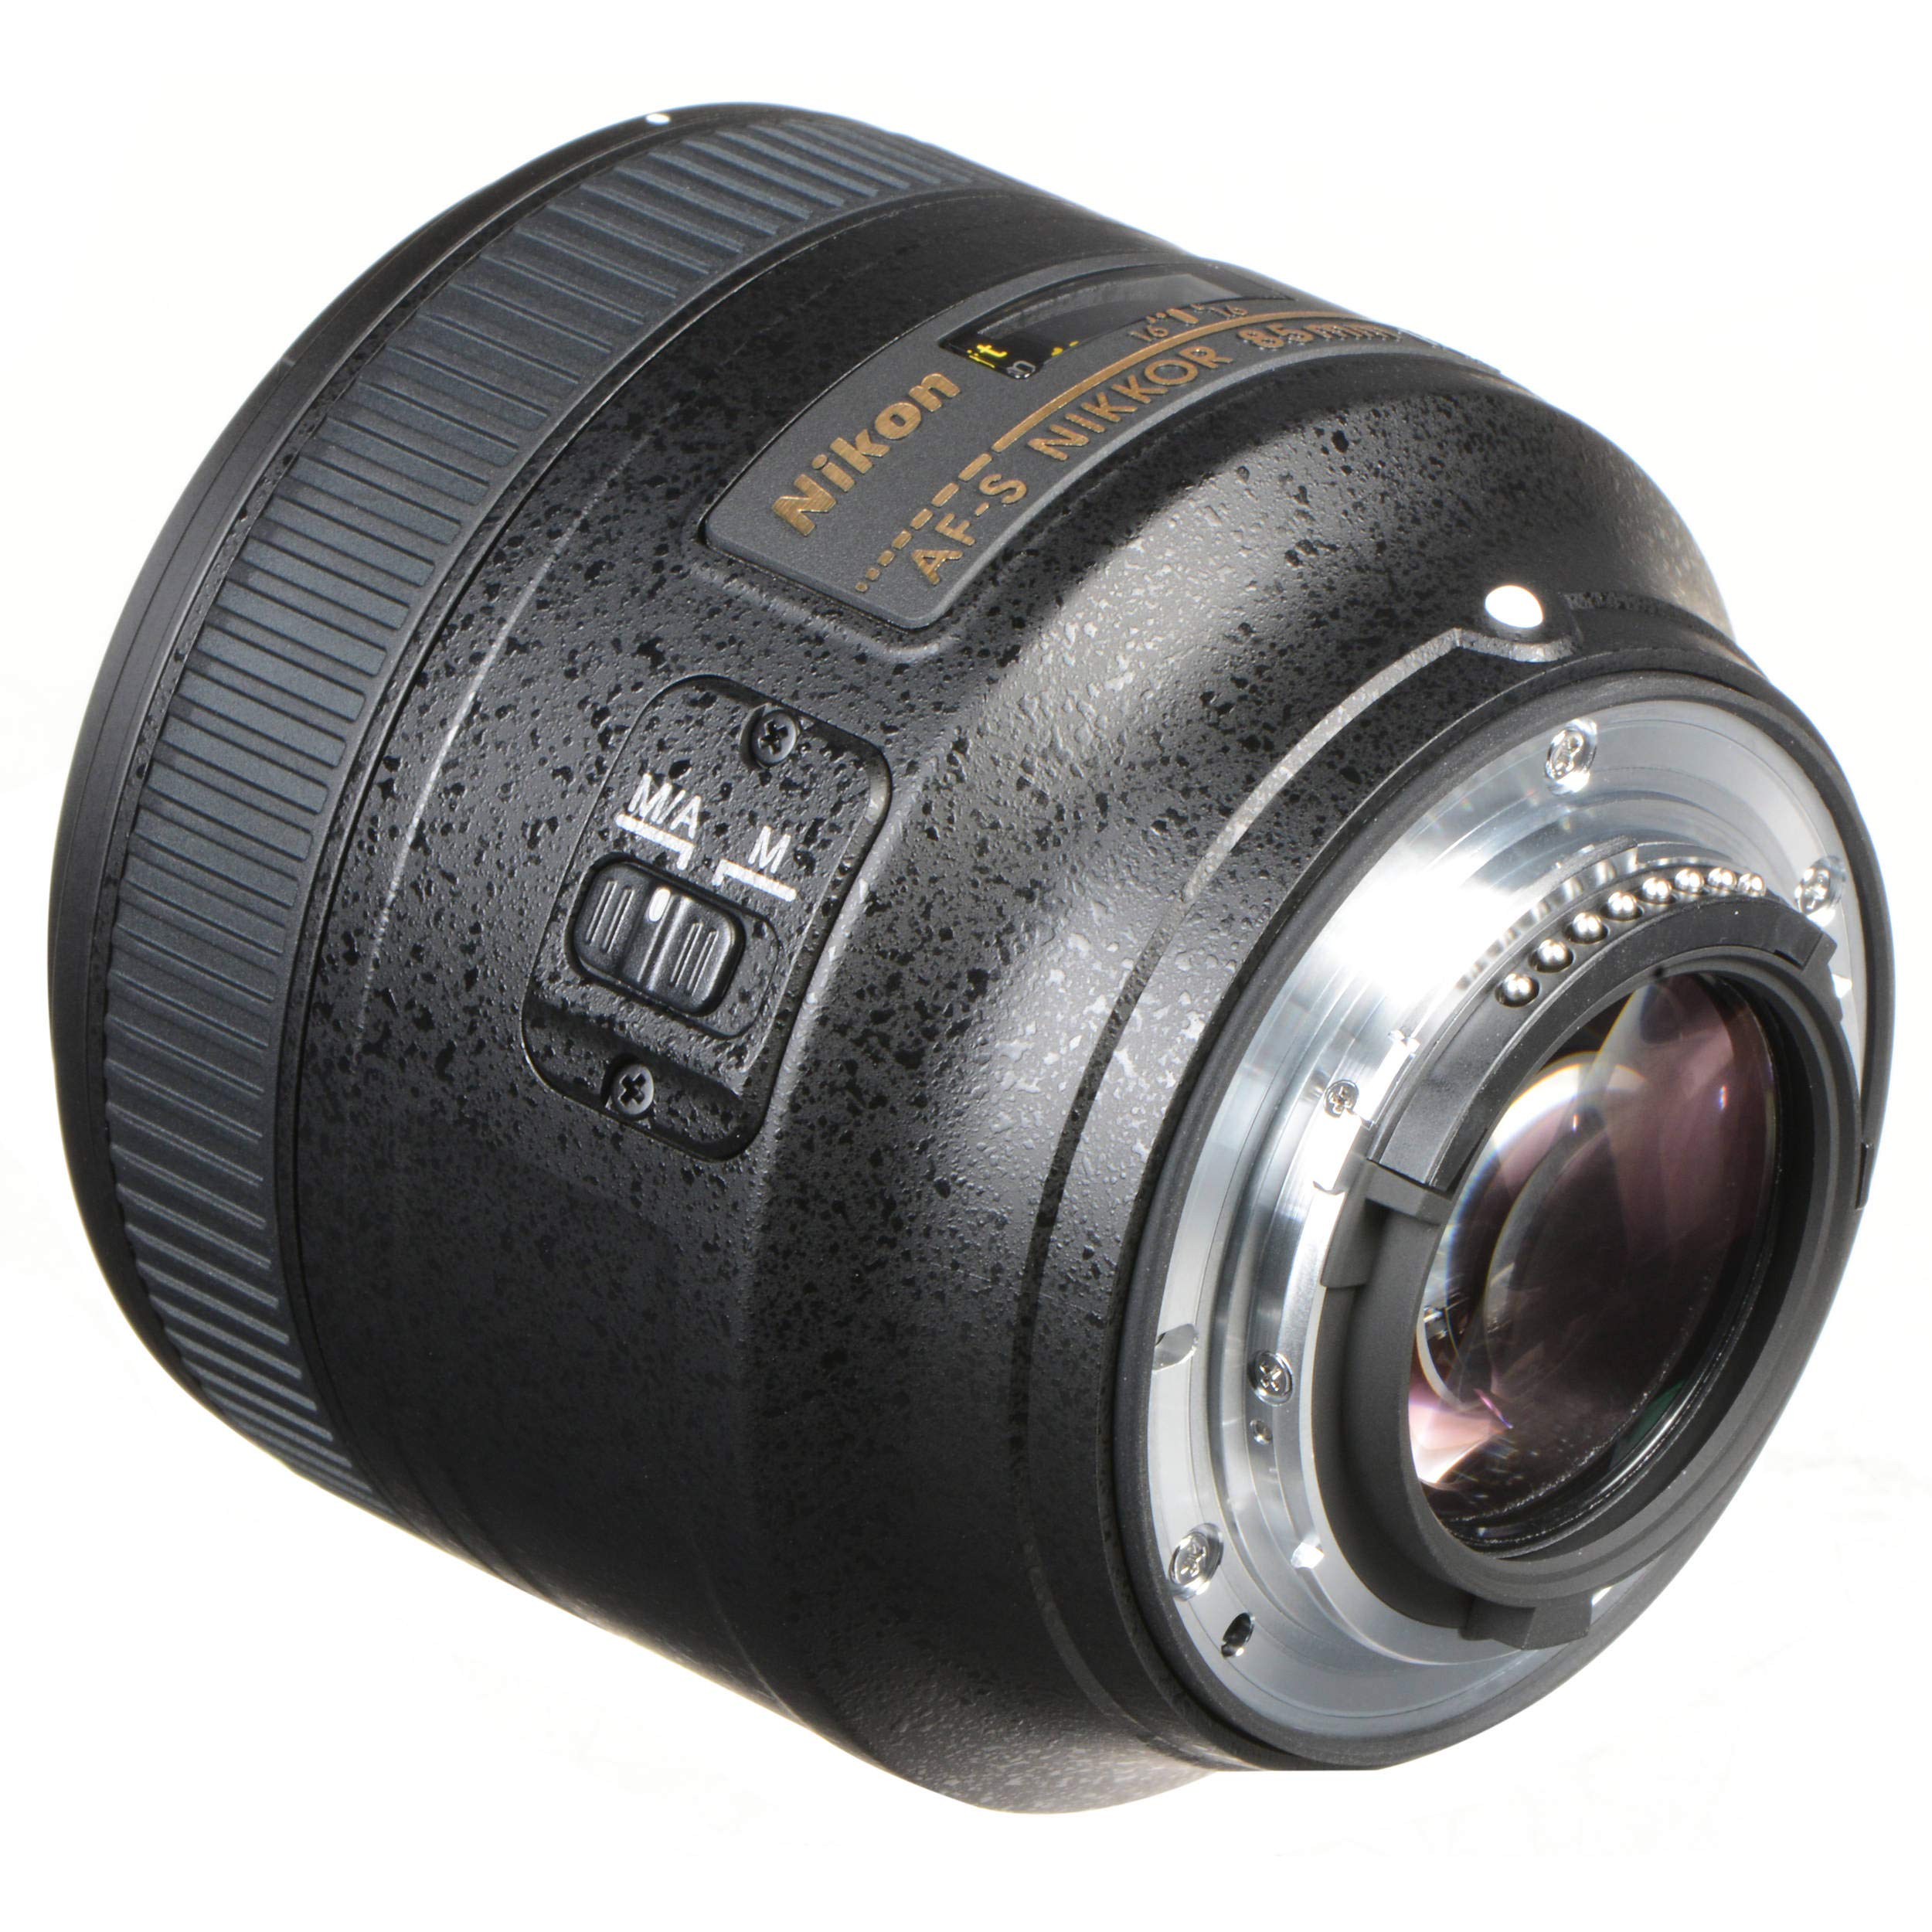 Nikon 85MM f.1.8G AF-S Lens (Intl Model) + 3pcs UV Lens Filter Kit + Cleaning Kit